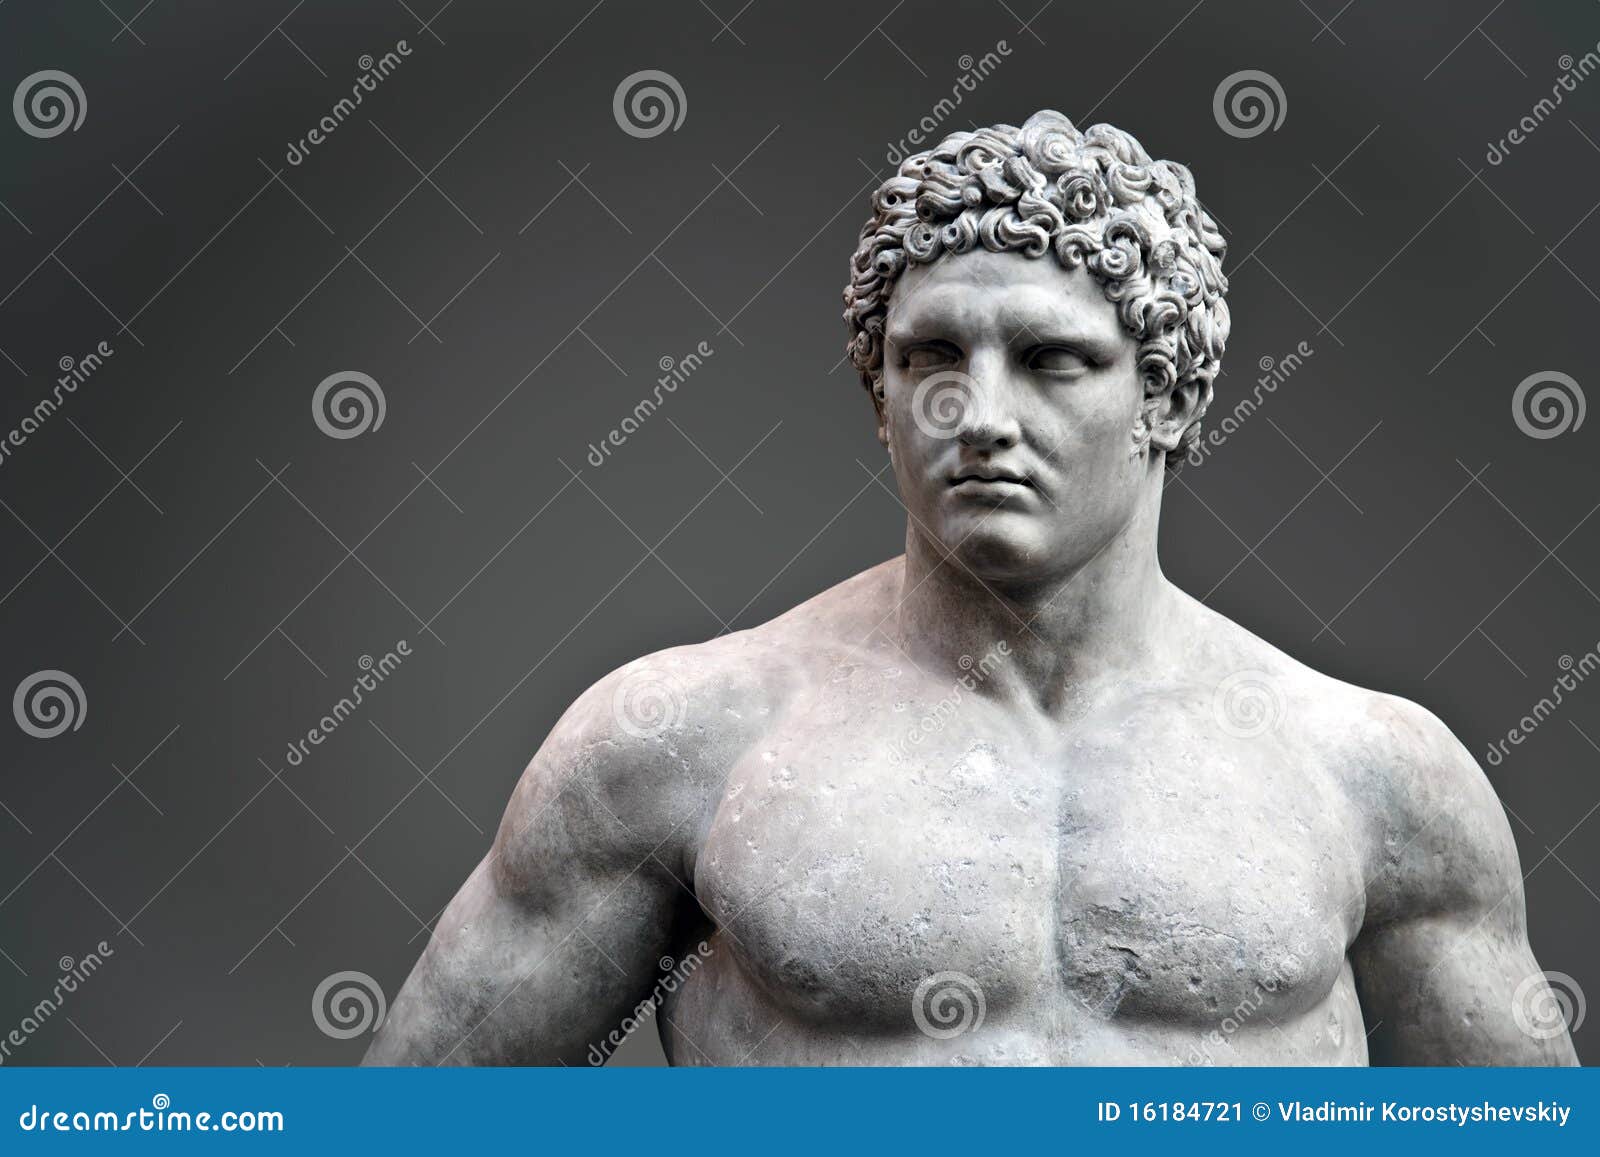 statue of hercules